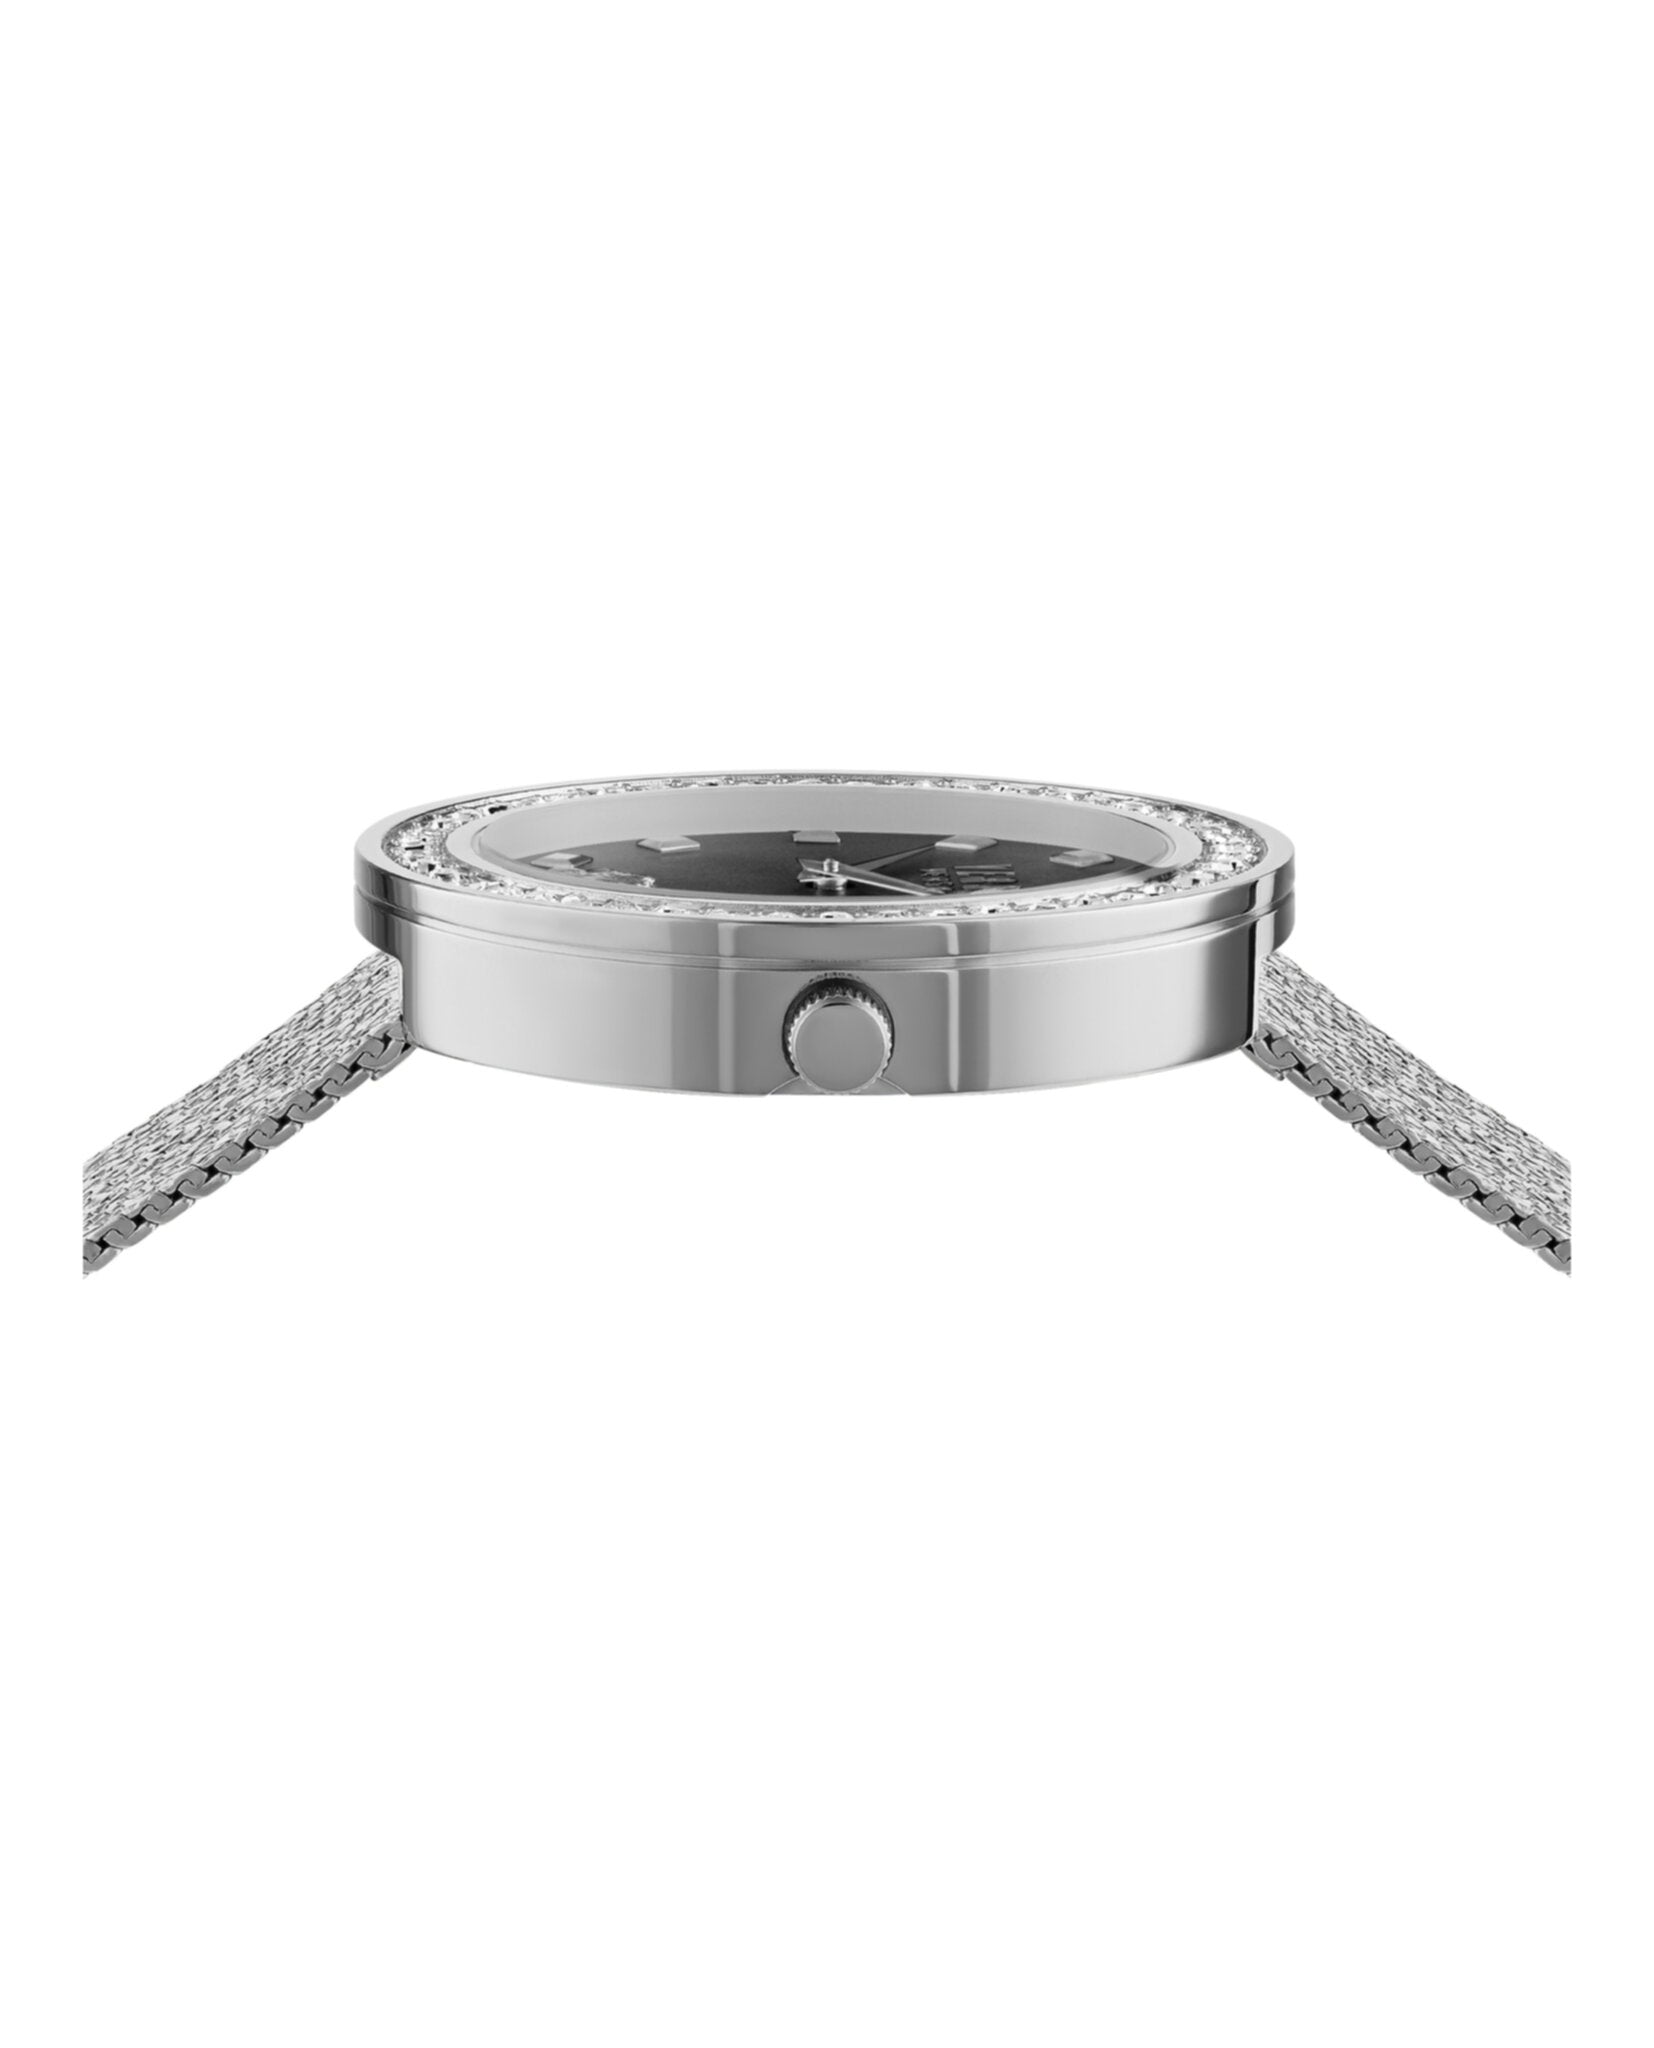 Carnaby Street Box S Bracelet Watch